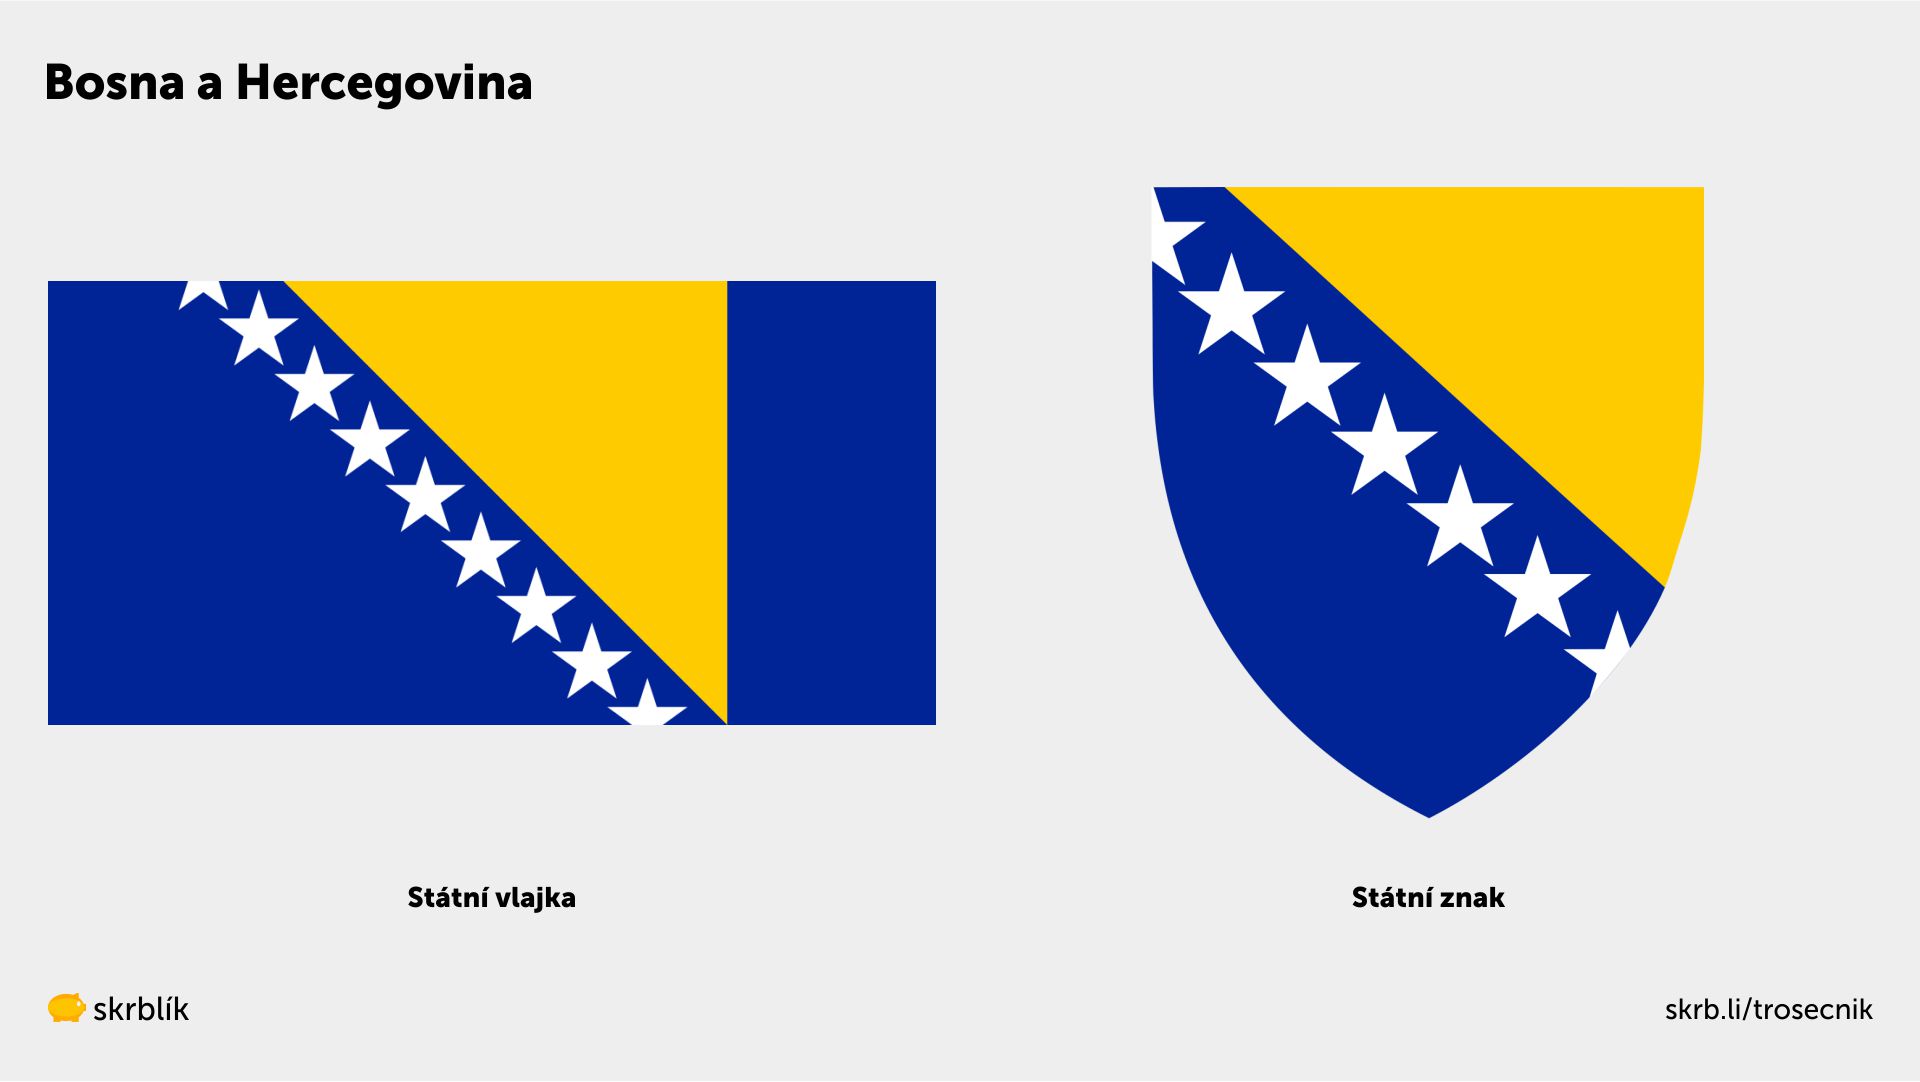 Bosna a Hercegovina